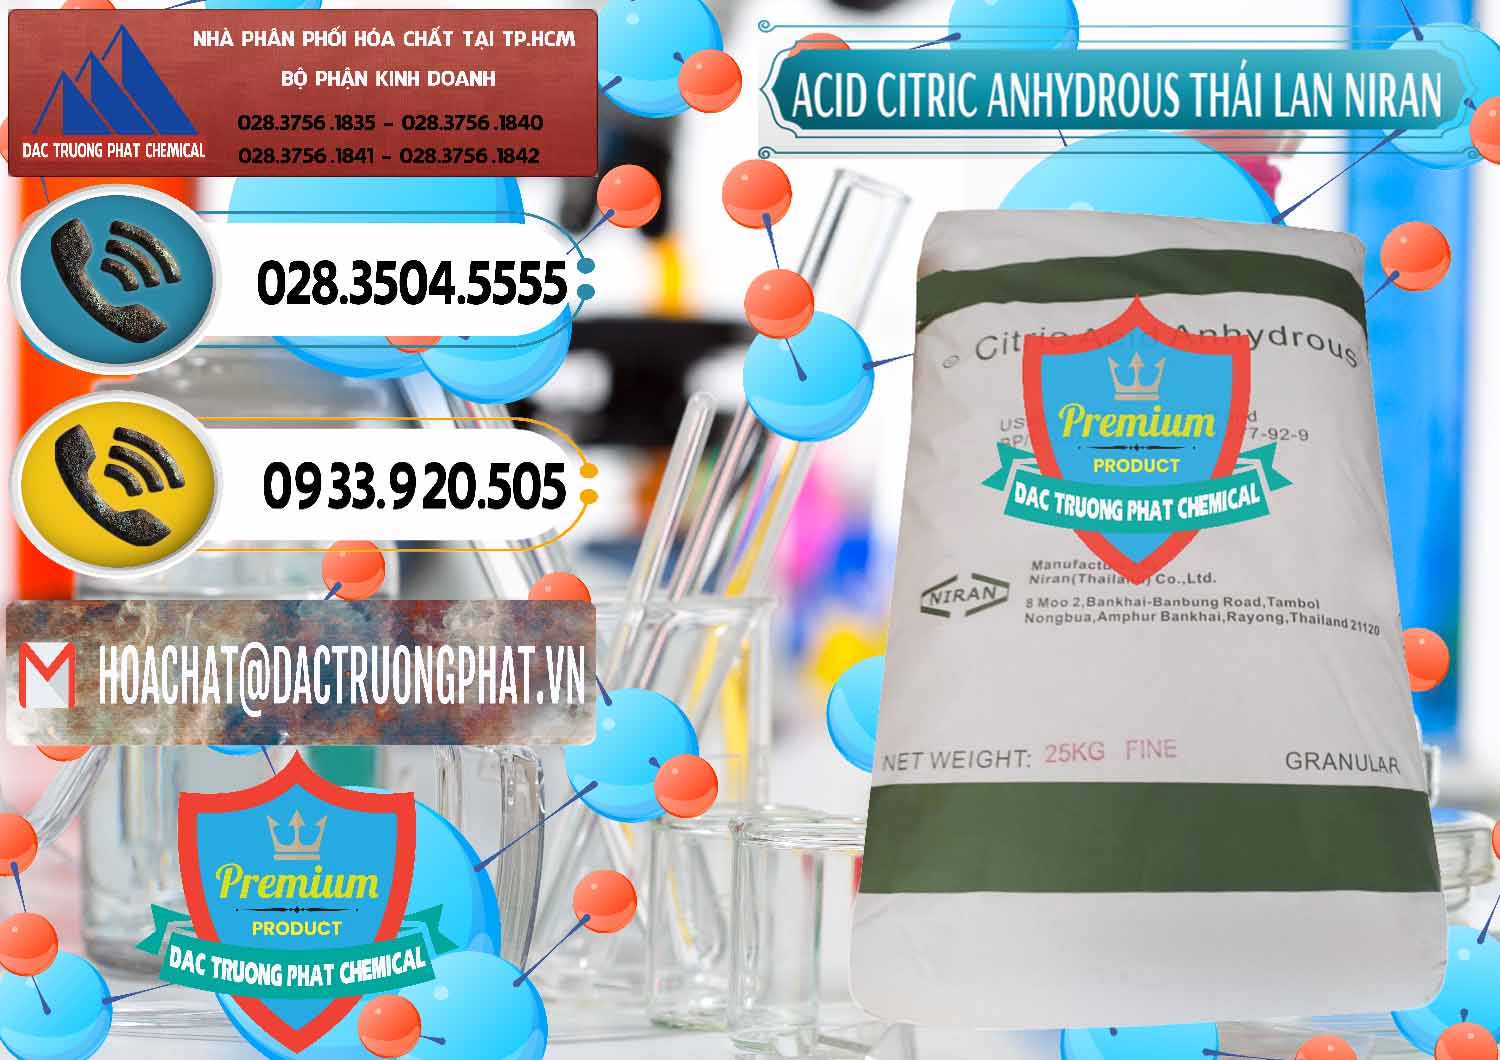 Công ty chuyên bán ( cung ứng ) Acid Citric - Axit Citric Anhydrous - Thái Lan Niran - 0231 - Công ty chuyên cung cấp và nhập khẩu hóa chất tại TP.HCM - hoachatdetnhuom.vn